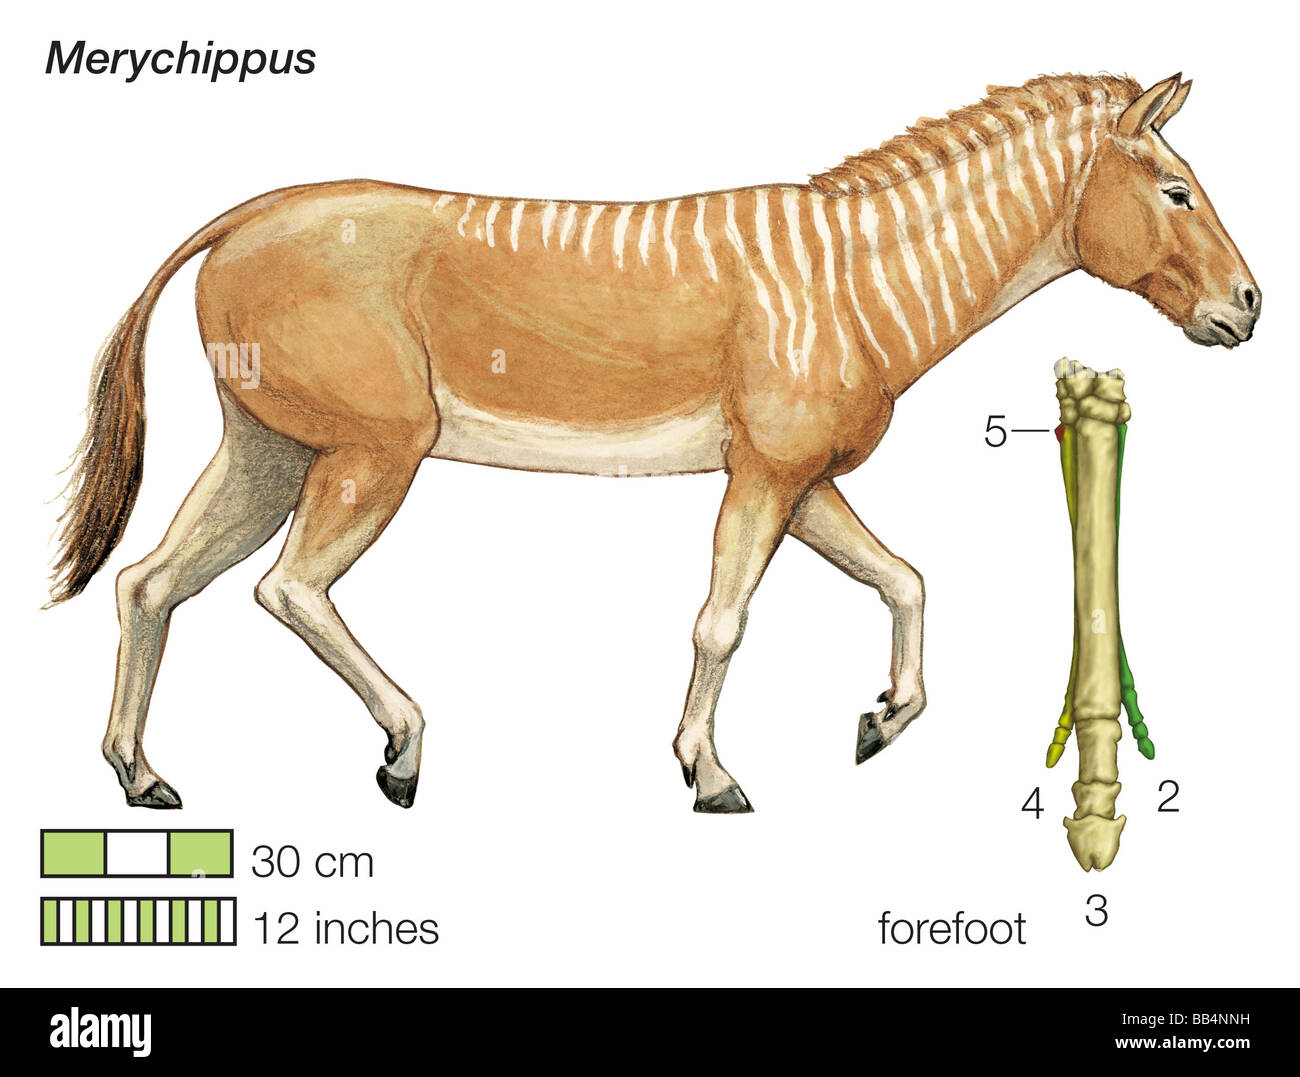 Die angestammten Pferd Merychippus. Bestehenden Zehenknochen des Vorfußes sind von der Mitte des Körpers nach außen nummeriert. Stockfoto